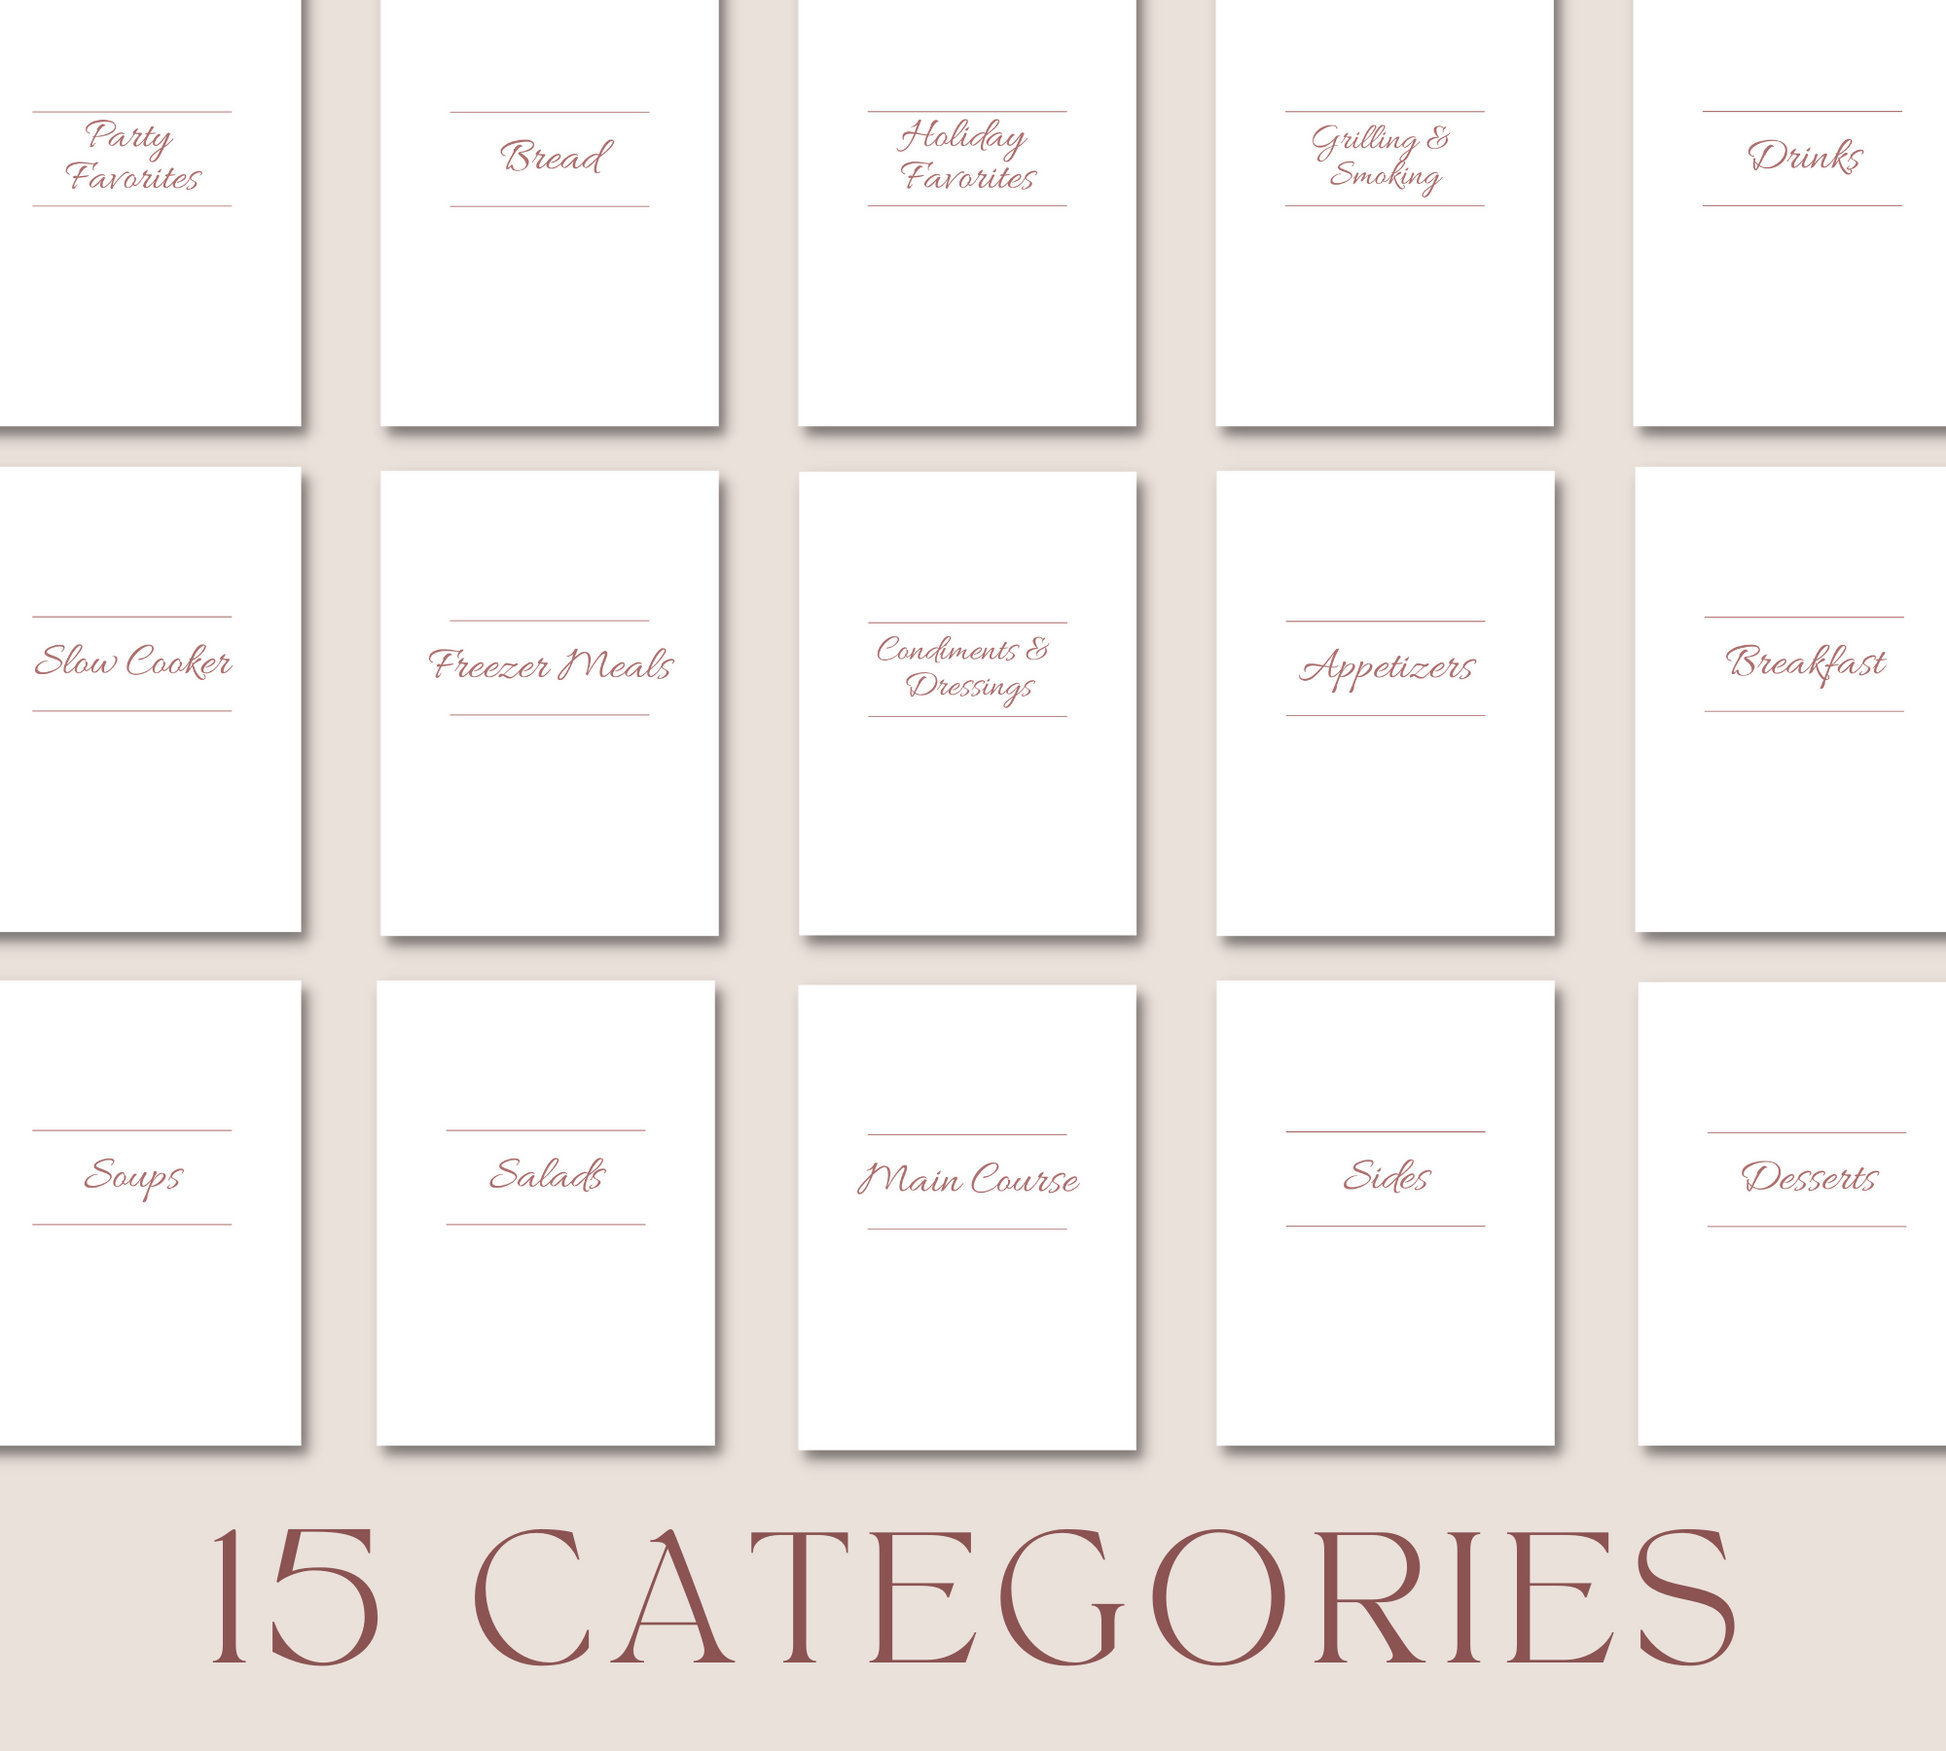 Printable cookbook categories displayed, 15